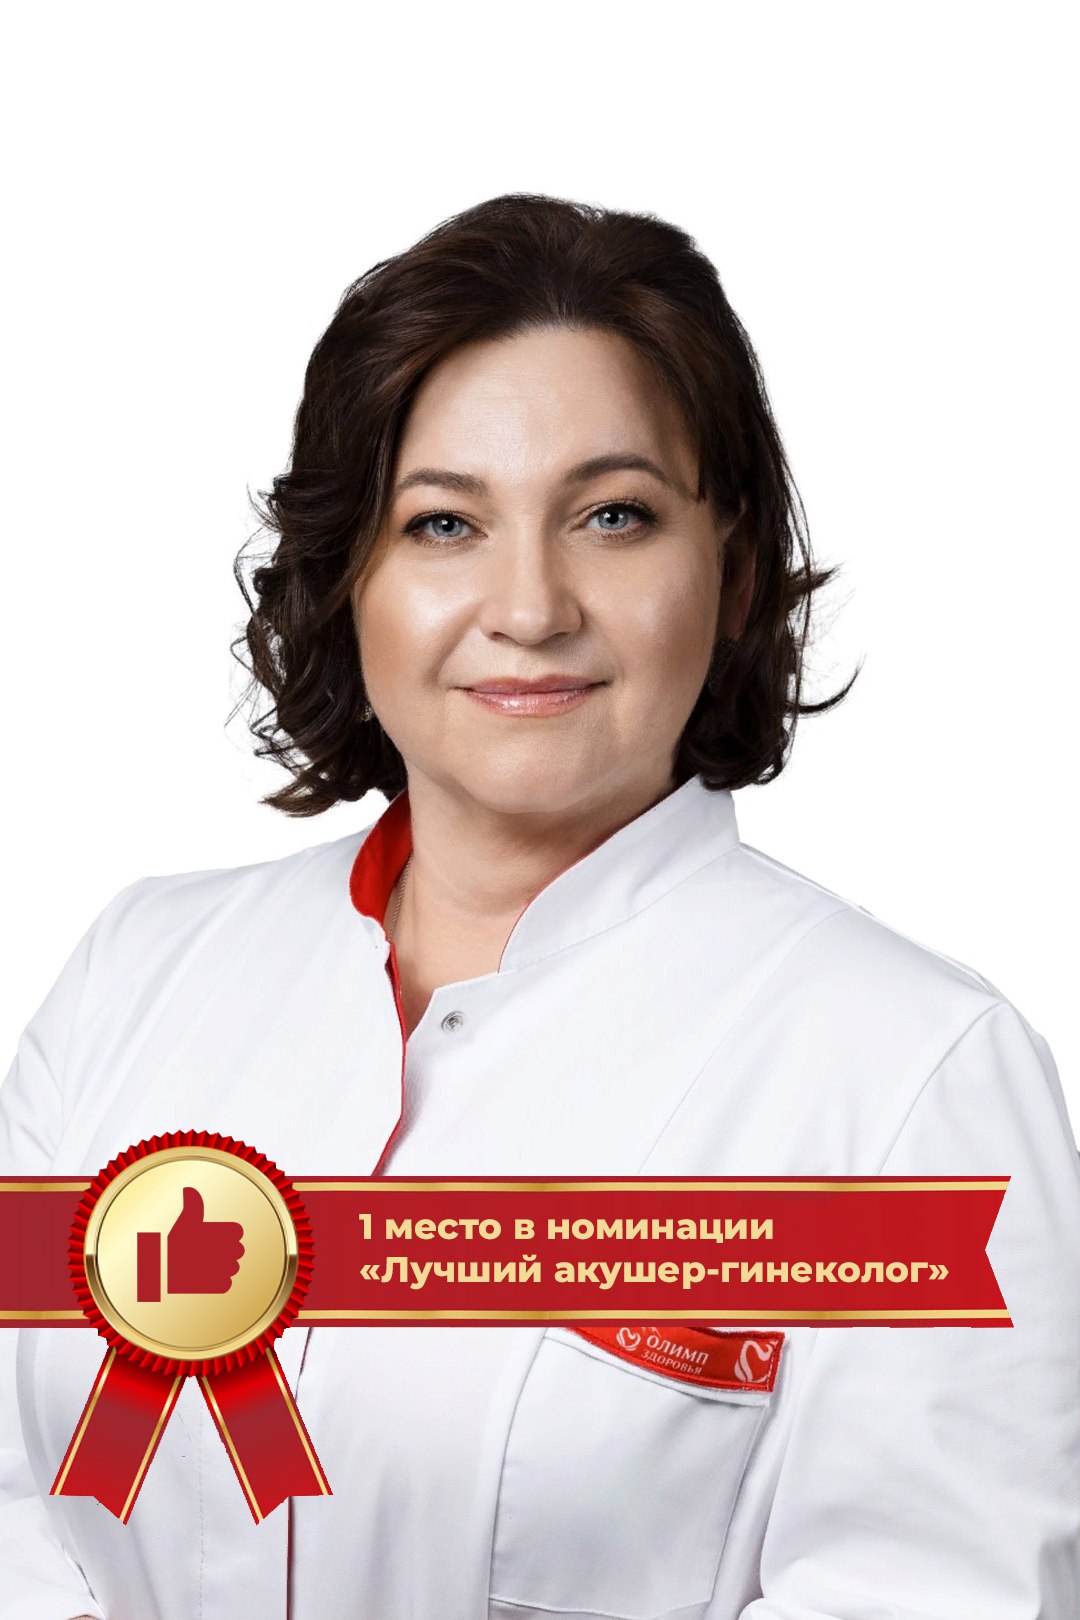 Борзых Евгения Владимировна